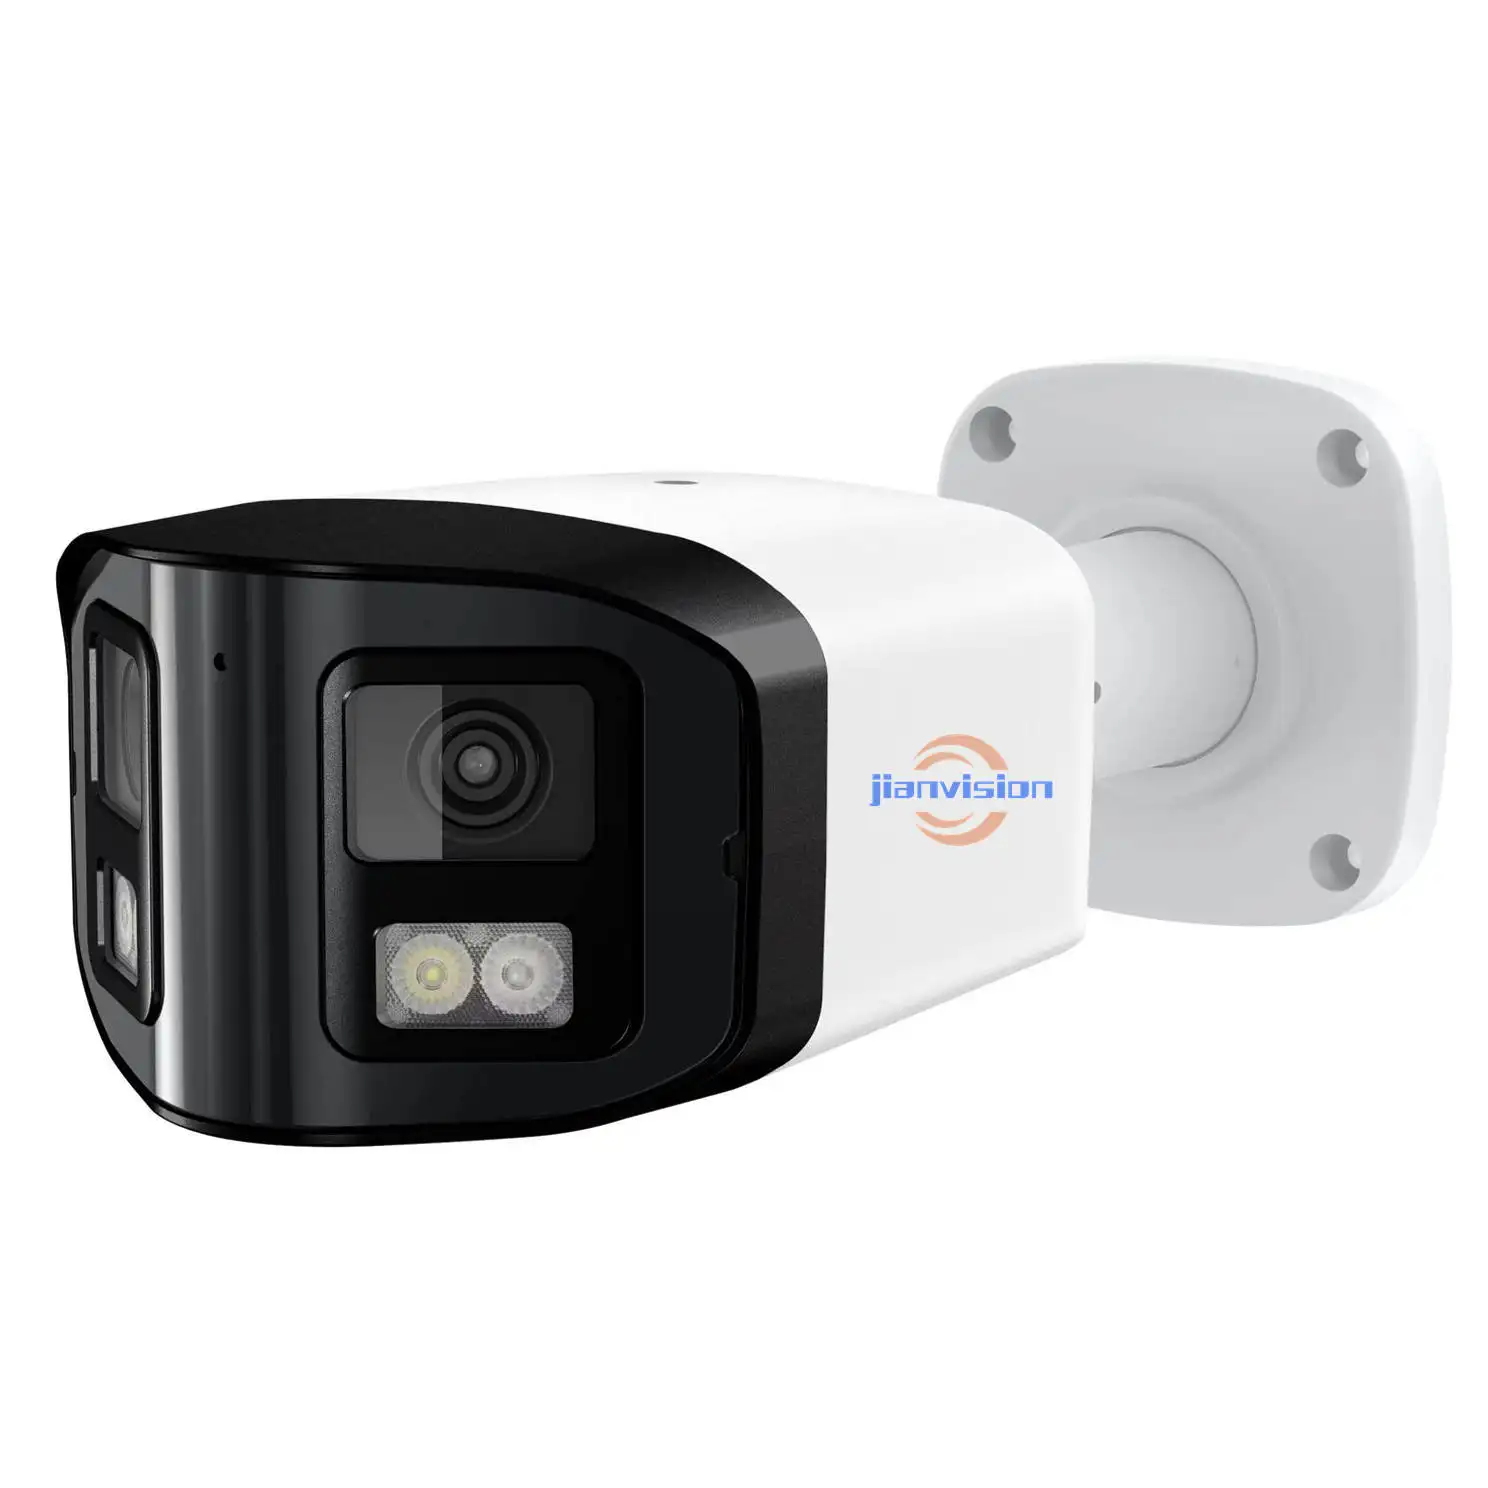 Jianvision melhor vigilância cmos sensor externo 4mp poe ip66 câmeras cctv à prova d' água ip câmera inteligente segurança para casa